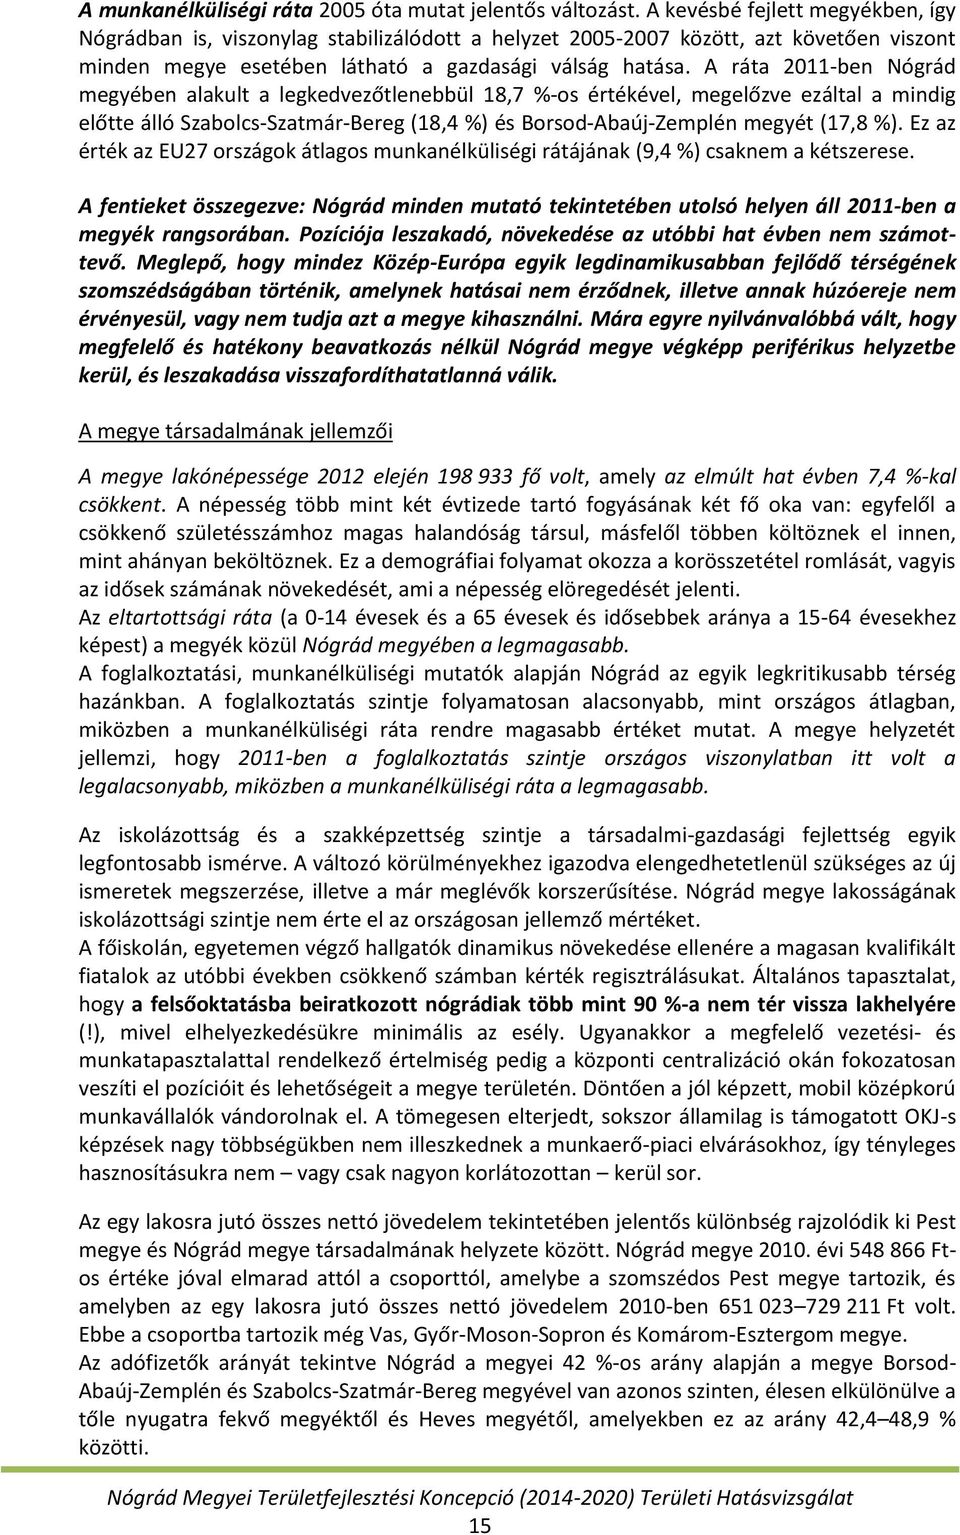 A ráta 2011-ben Nógrád megyében alakult a legkedvezőtlenebbül 18,7 %-os értékével, megelőzve ezáltal a mindig előtte álló Szabolcs-Szatmár-Bereg (18,4 %) és Borsod-Abaúj-Zemplén megyét (17,8 %).